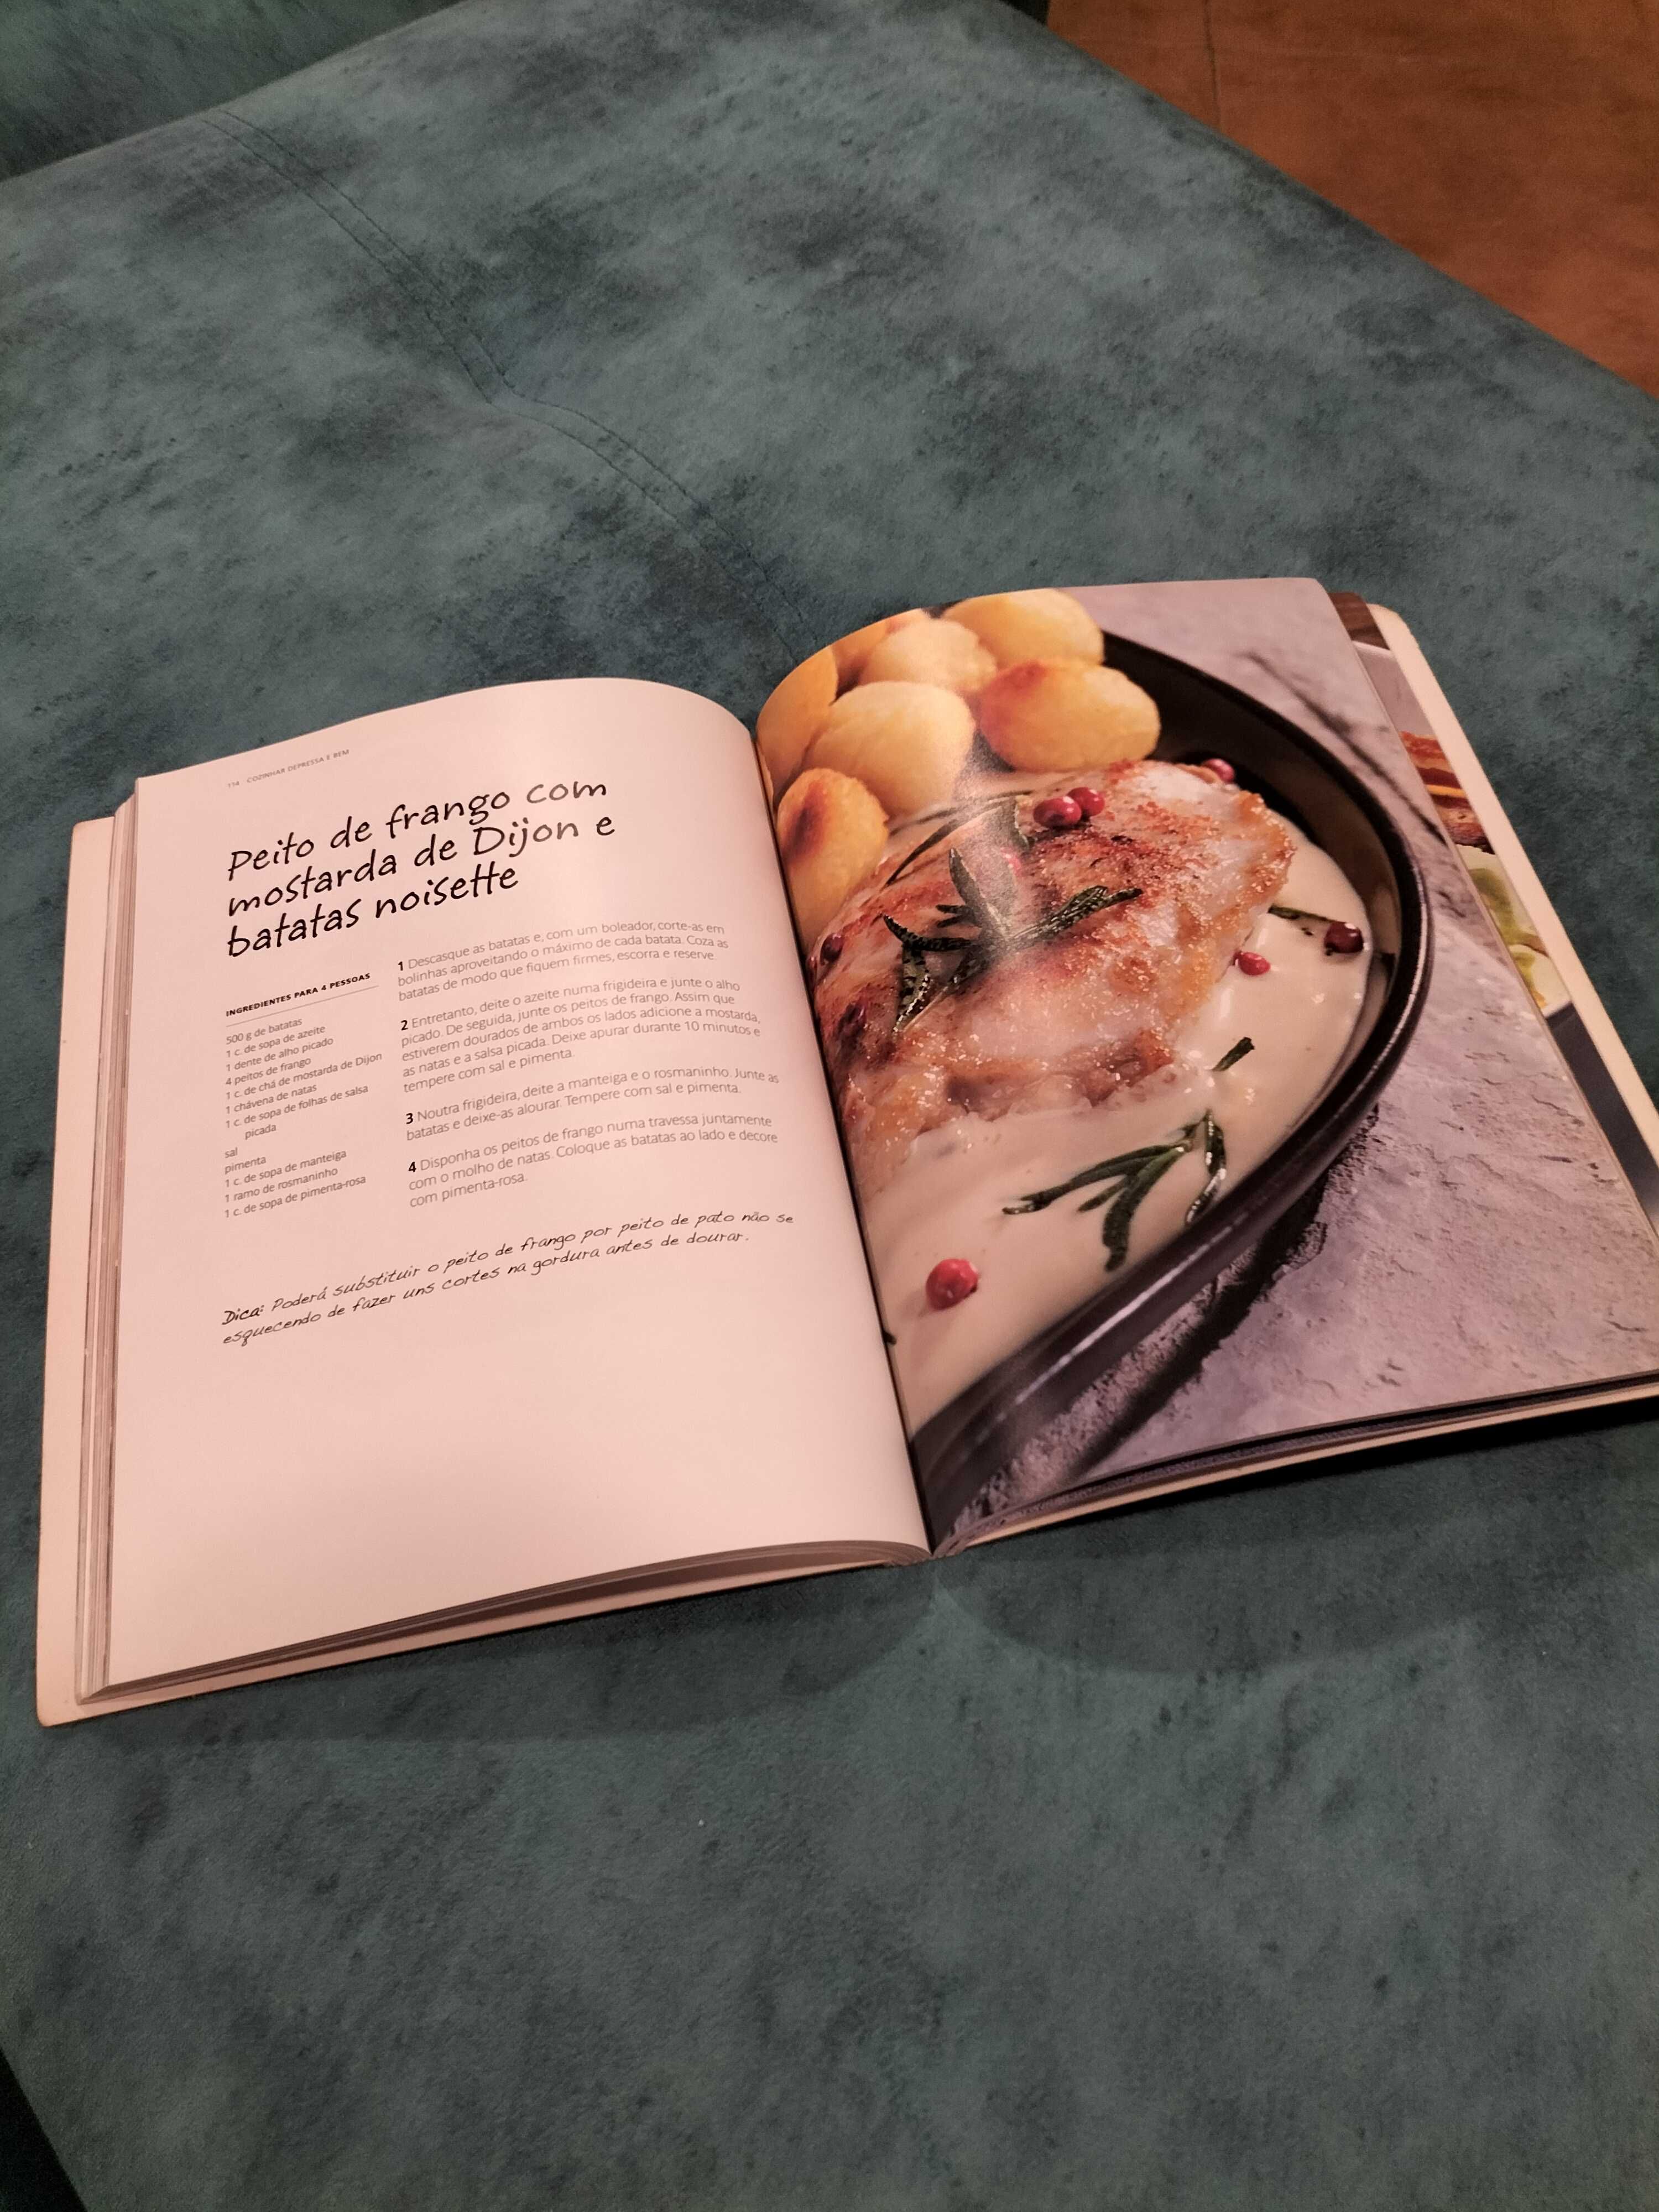 Livro "Cozinhar com prazer"